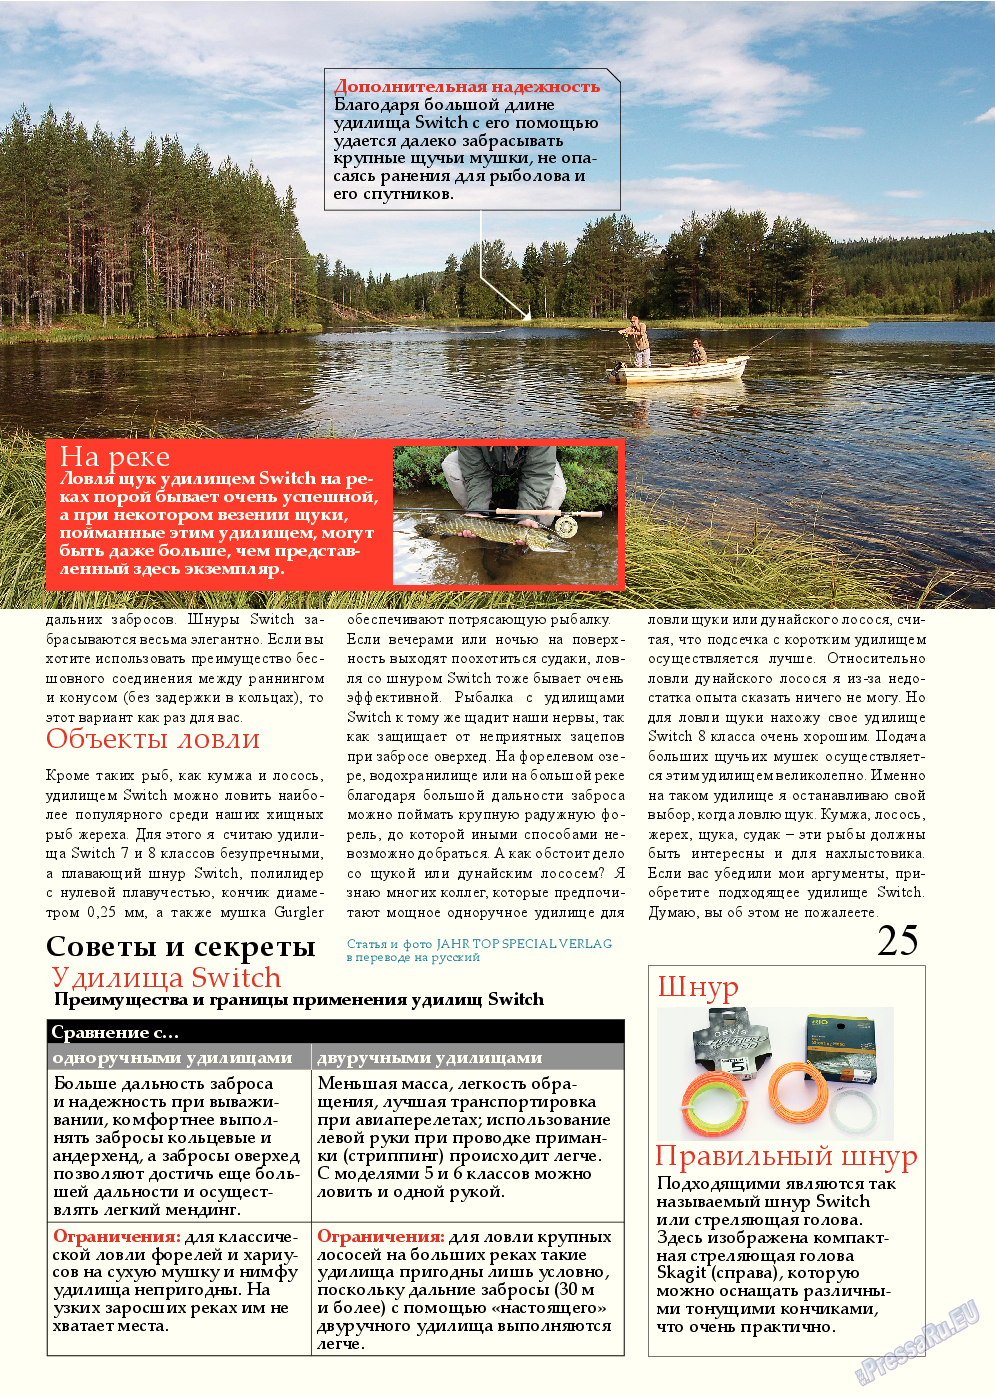 Рыбалка Plus, журнал. 2015 №2 стр.25